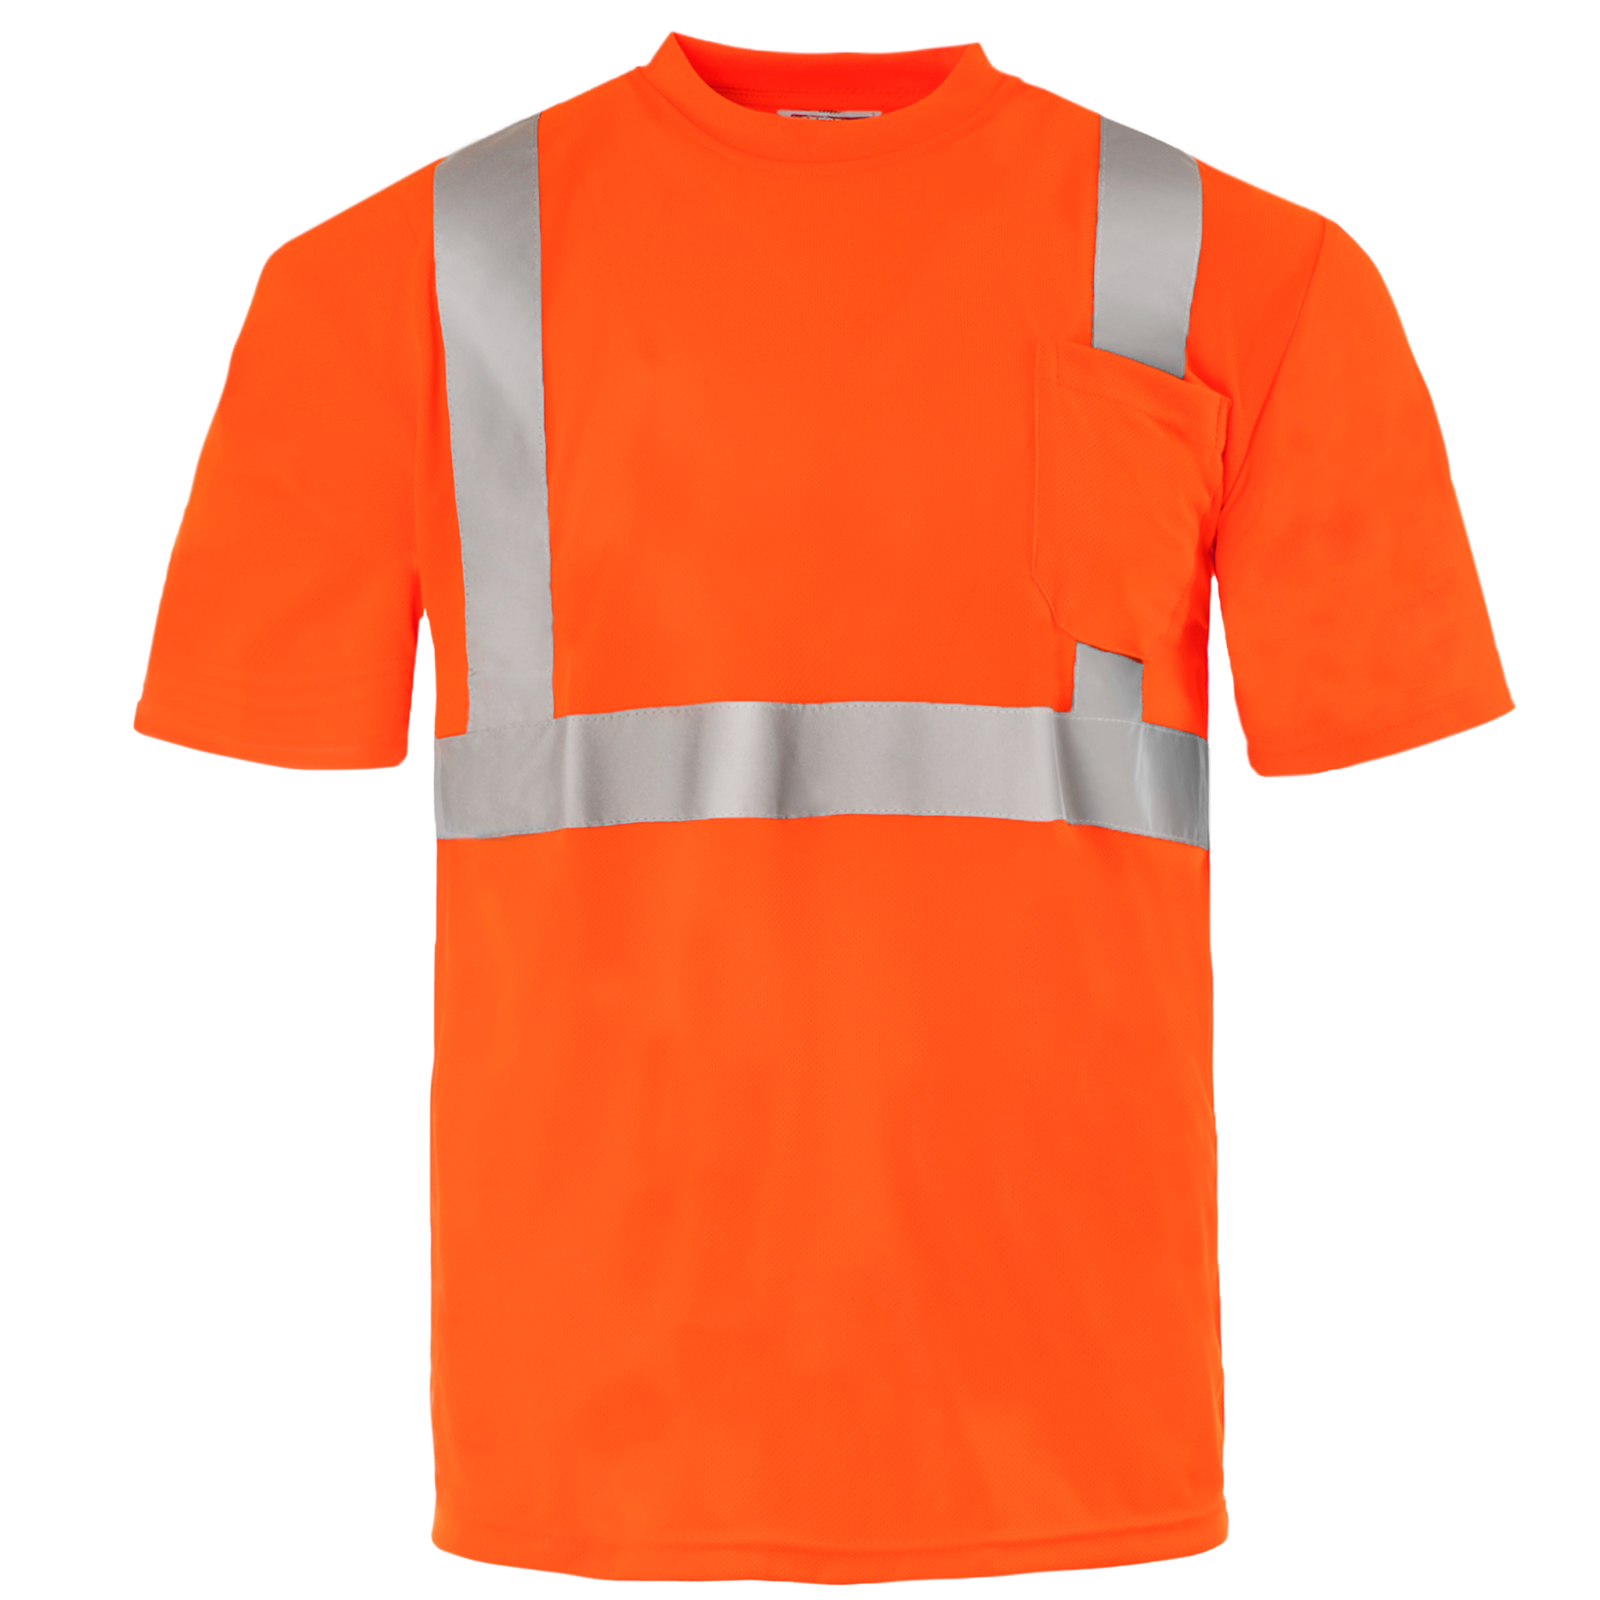 Front view of the orange hi-vis reflective safety pocket ANSI shirt